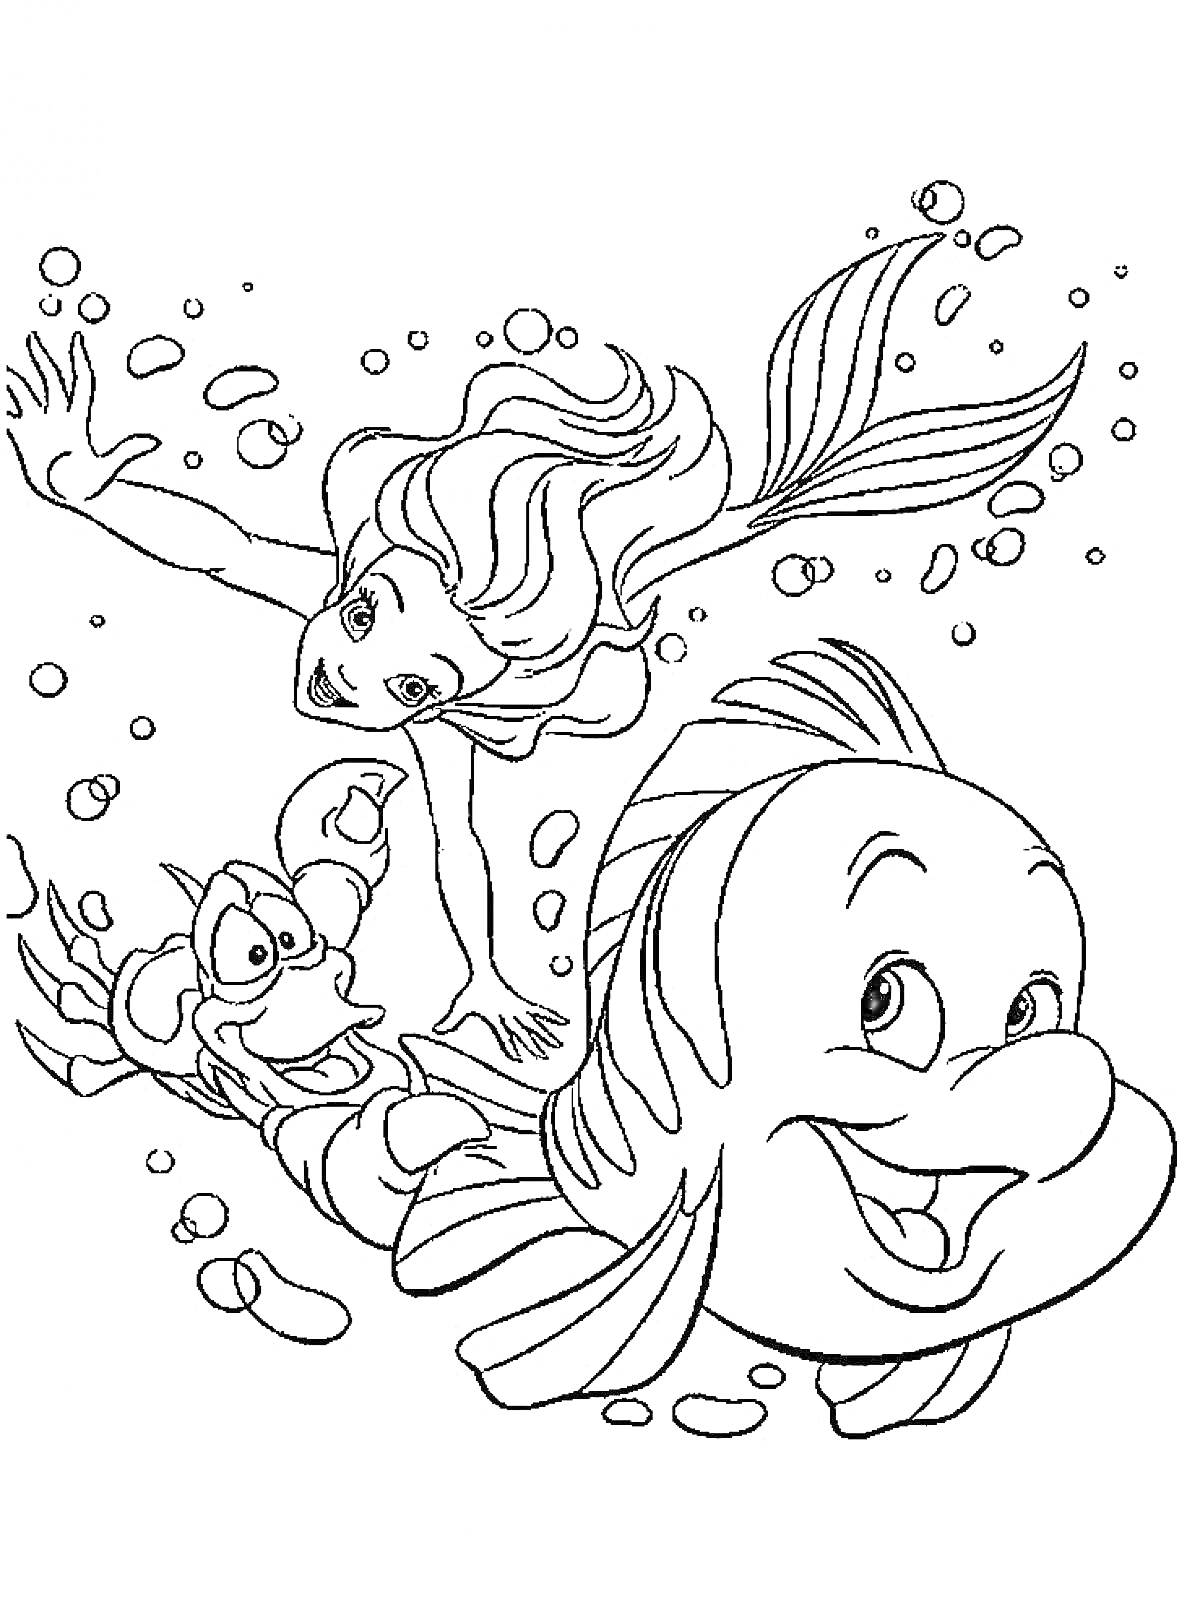 Раскраска Ариэль русалочка, Флаундер и Себастьян плавают под водой среди пузырей